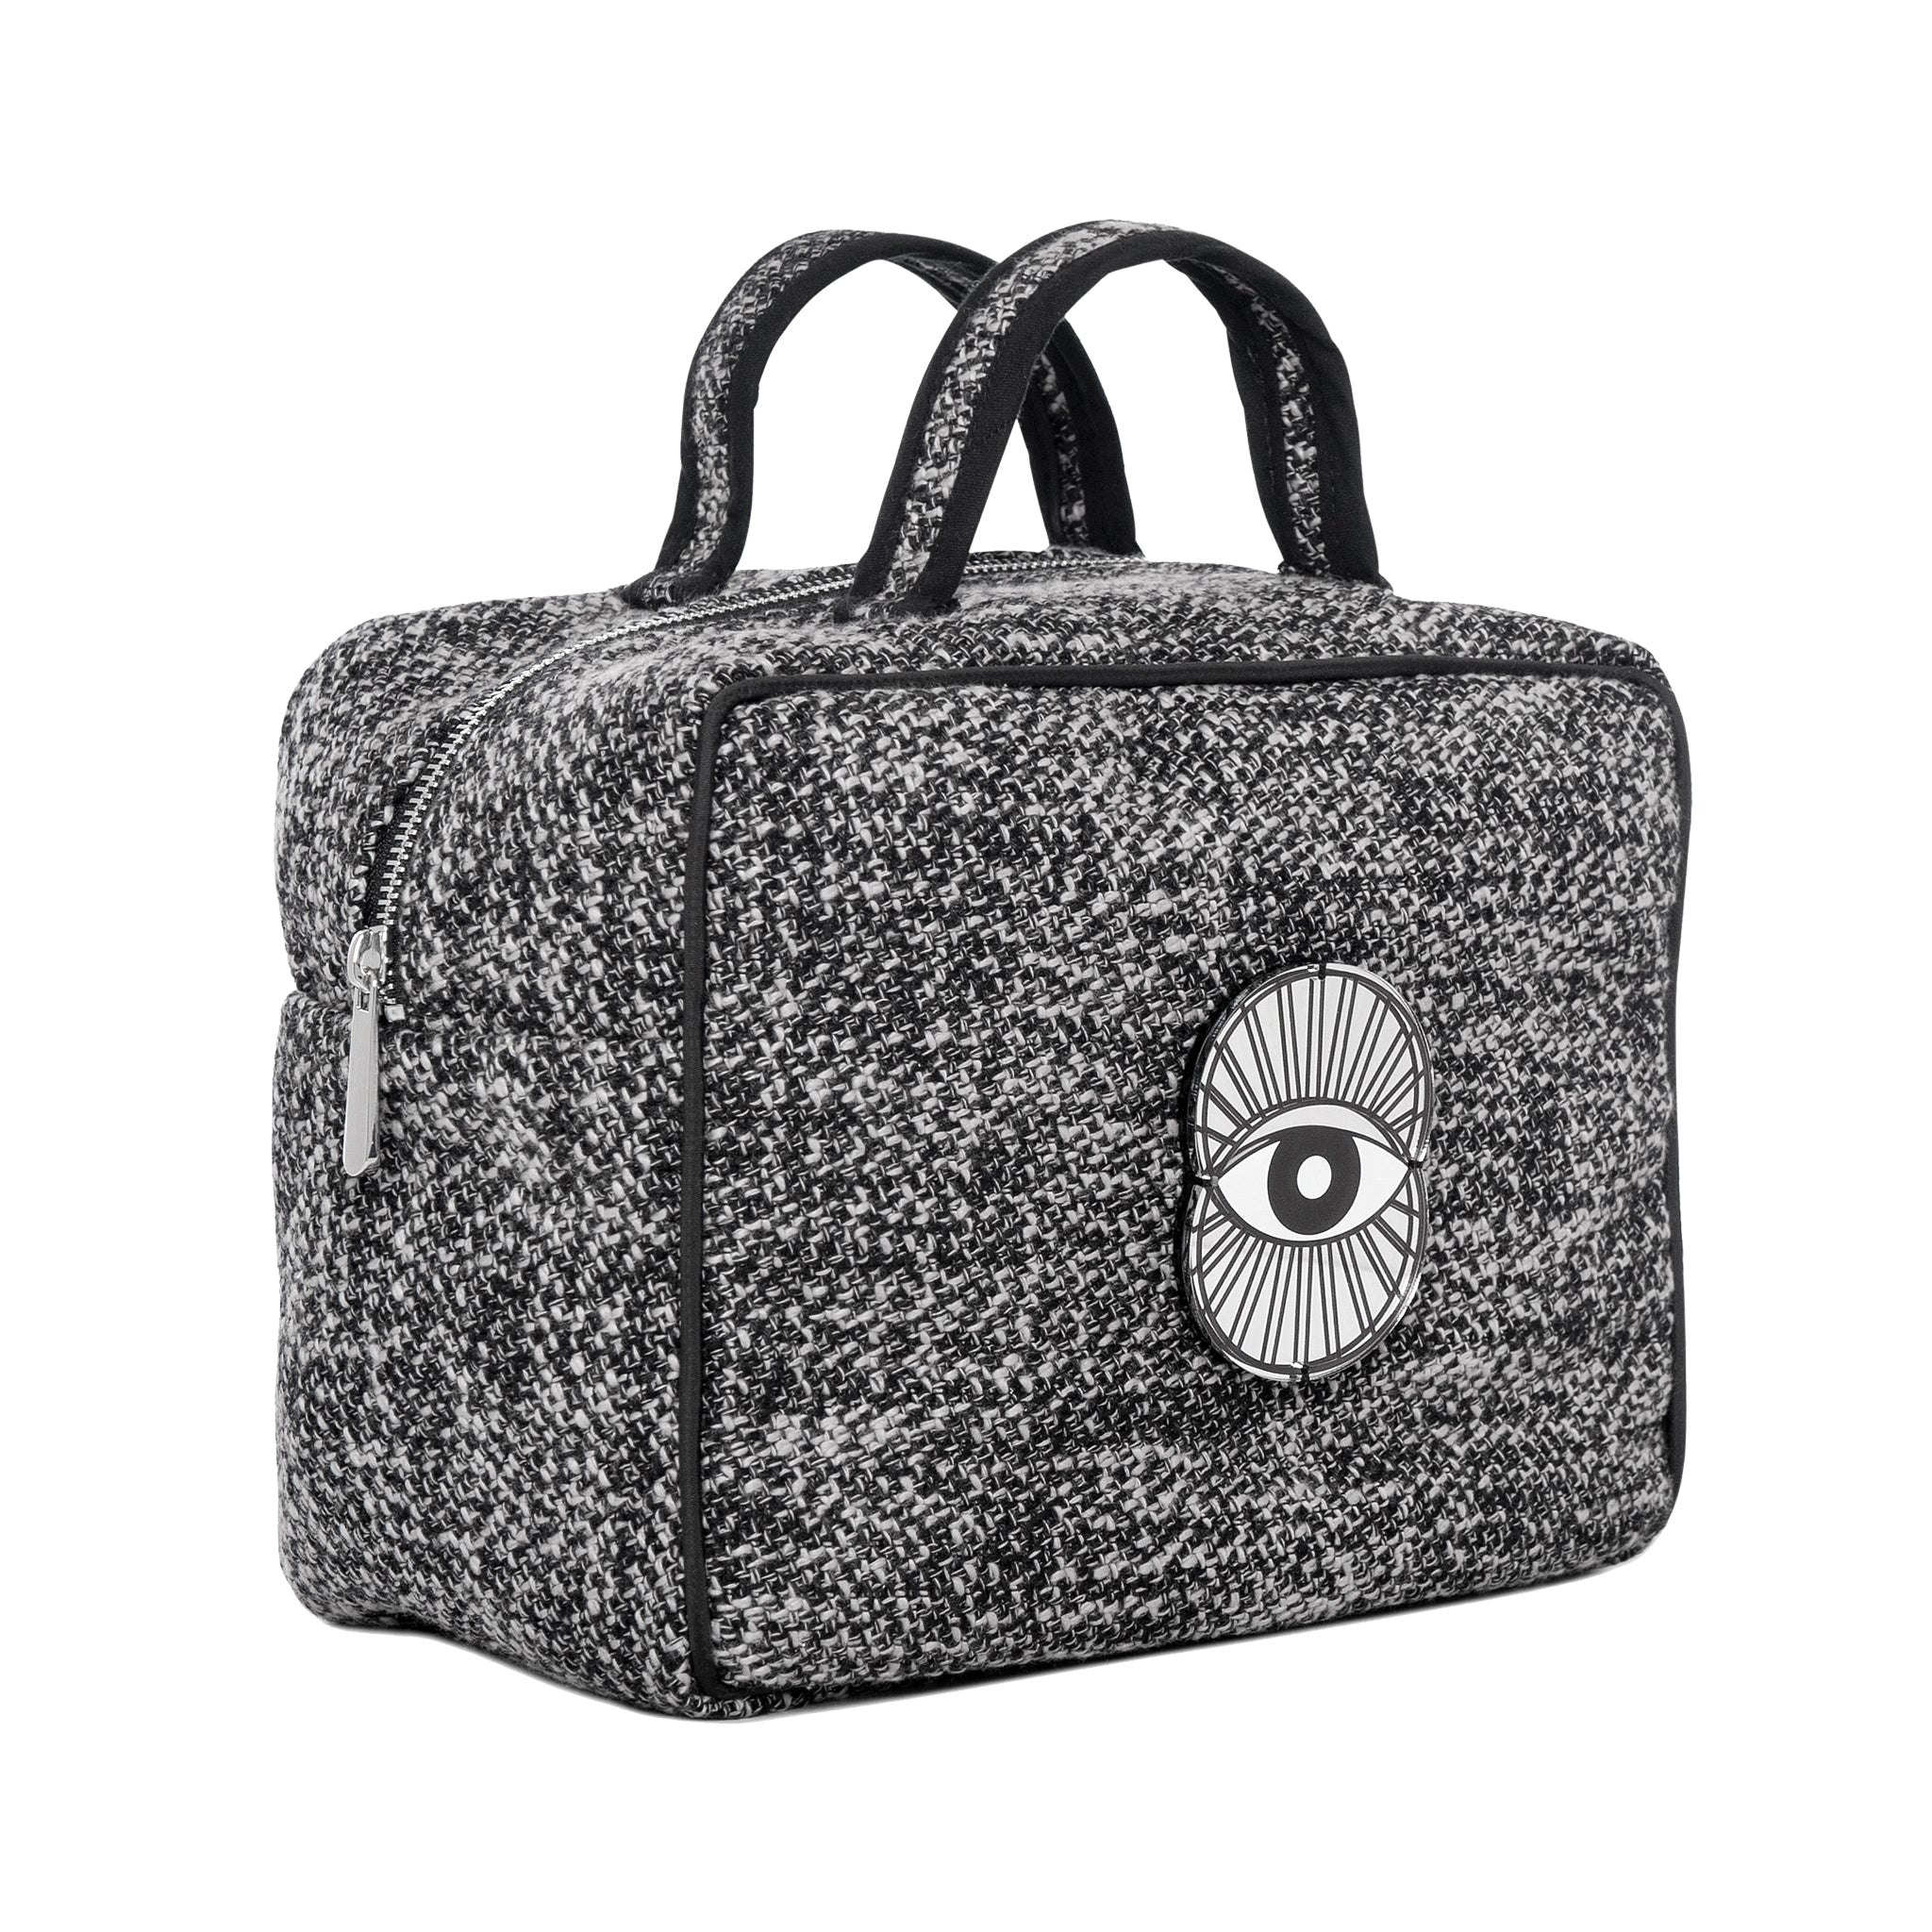 ATLAS Vanity Bag | Black White Woven Evil Eye